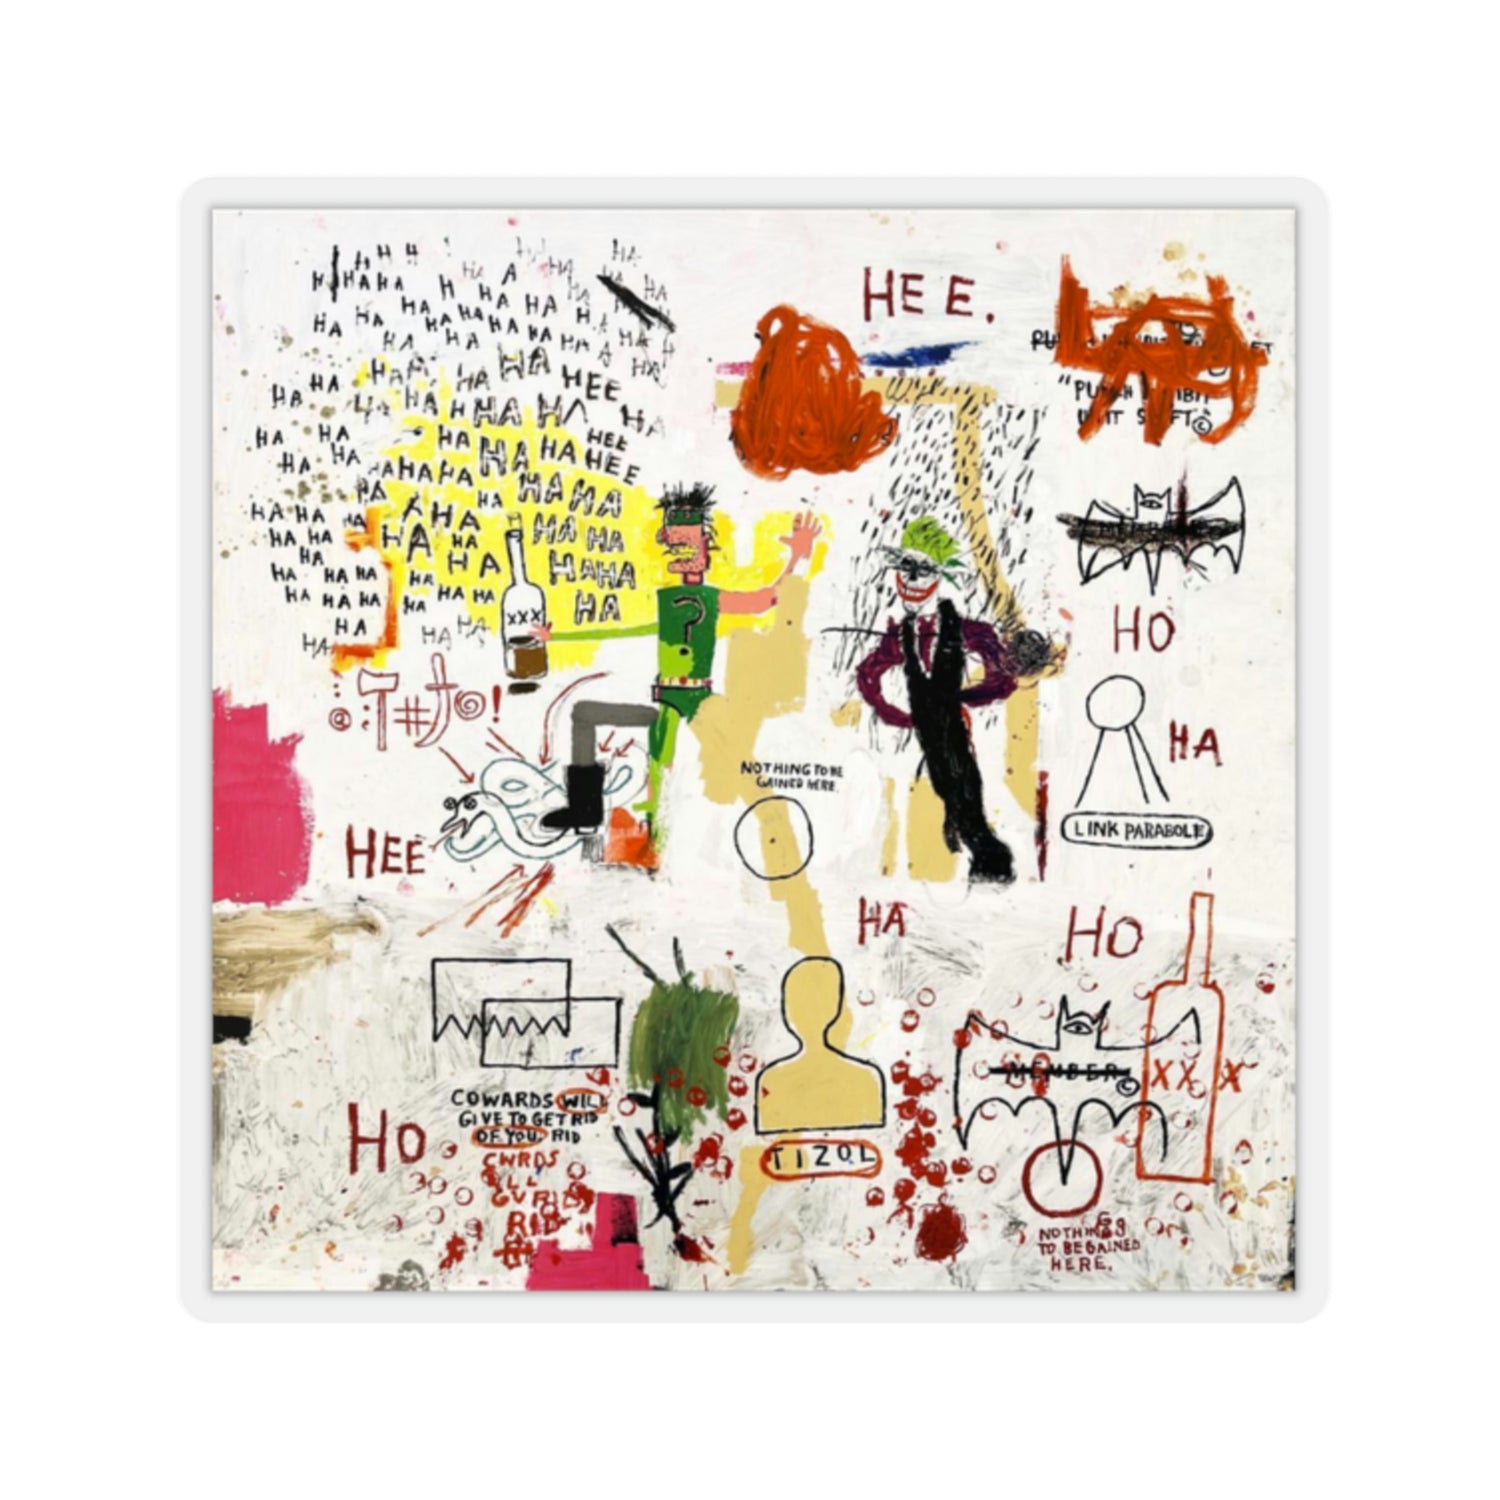 Jean-Michel Basquiat "Riddle Me This" Artwork Vinyl Sticker